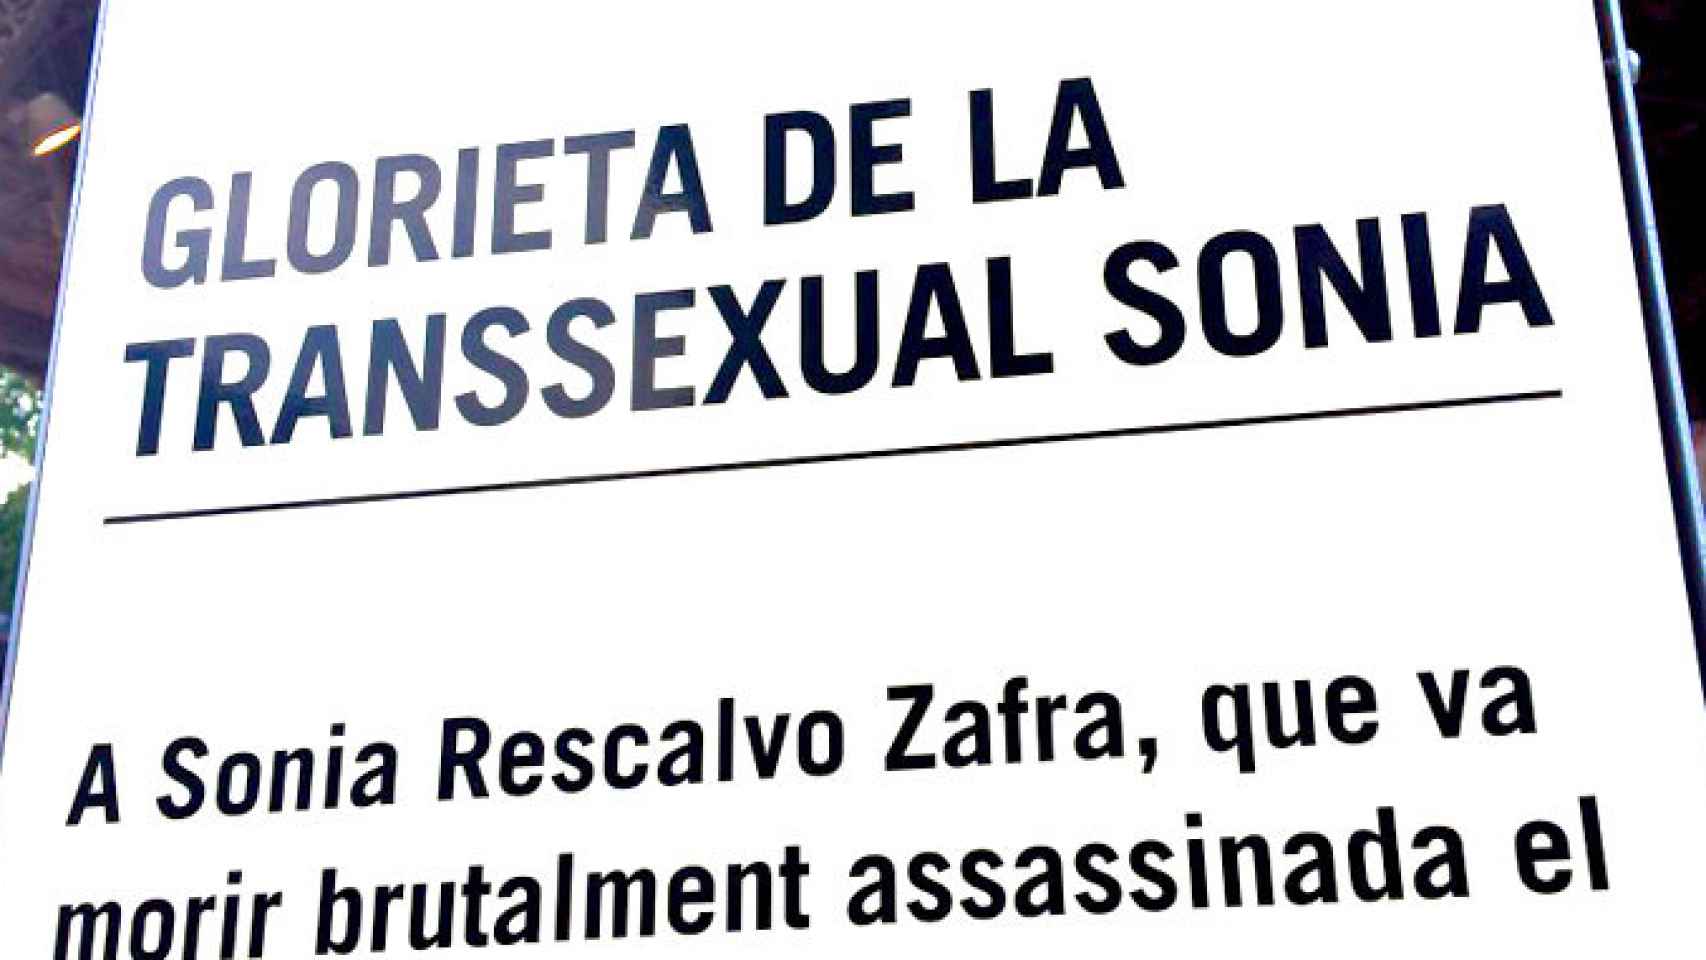 El homenaje a la transexual Sonia asesinada en el Parc de la Ciutadella en Barcelona